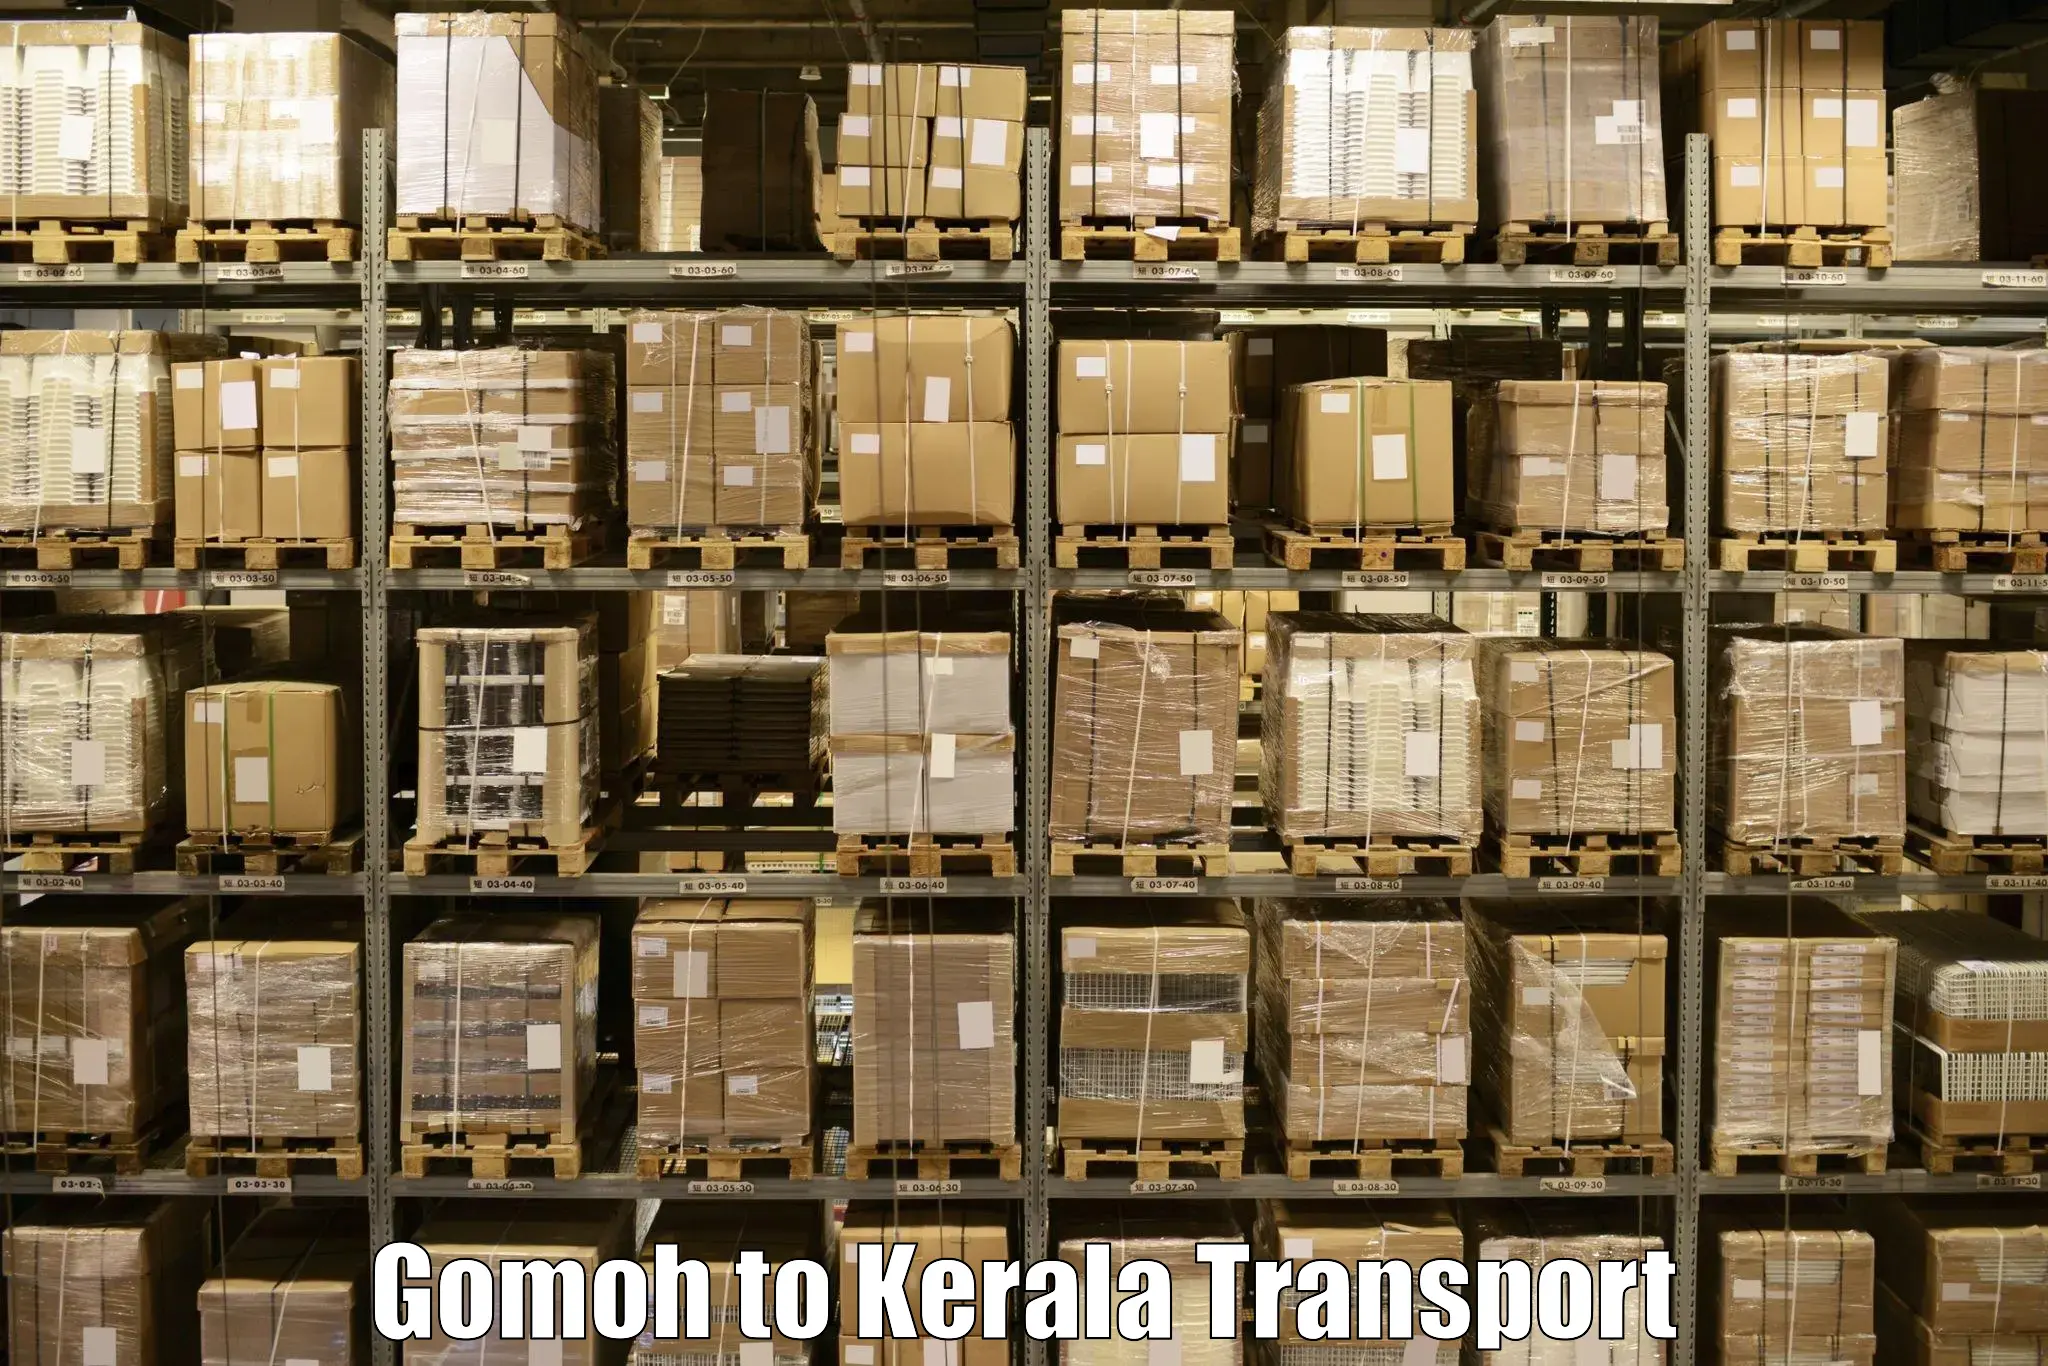 Shipping partner Gomoh to Mananthavady